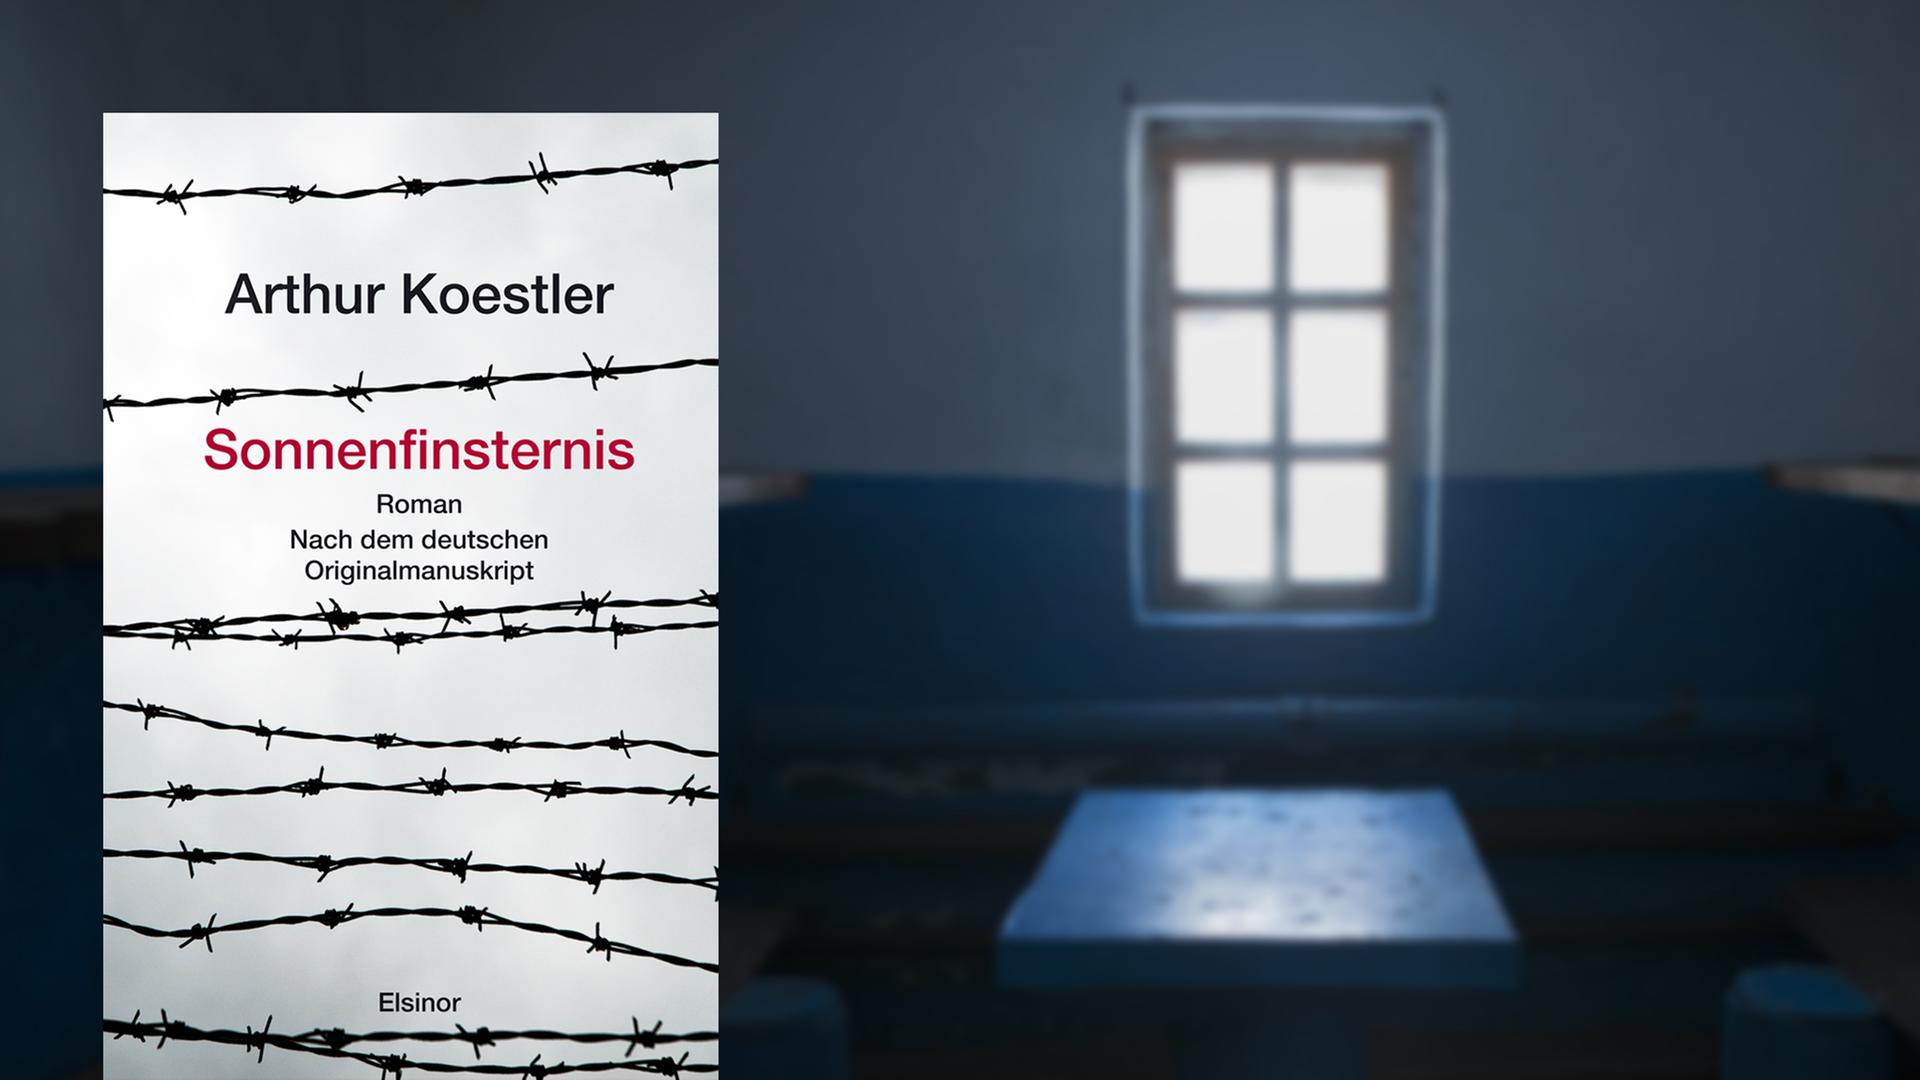 Mit dem Roman "Sonnenfinsternis" war Koestler seiner Zeit weit voraus - der Hintergrund zeigt eine ehemalige Zelle für politische Gefangene in einem sibirischem Lager